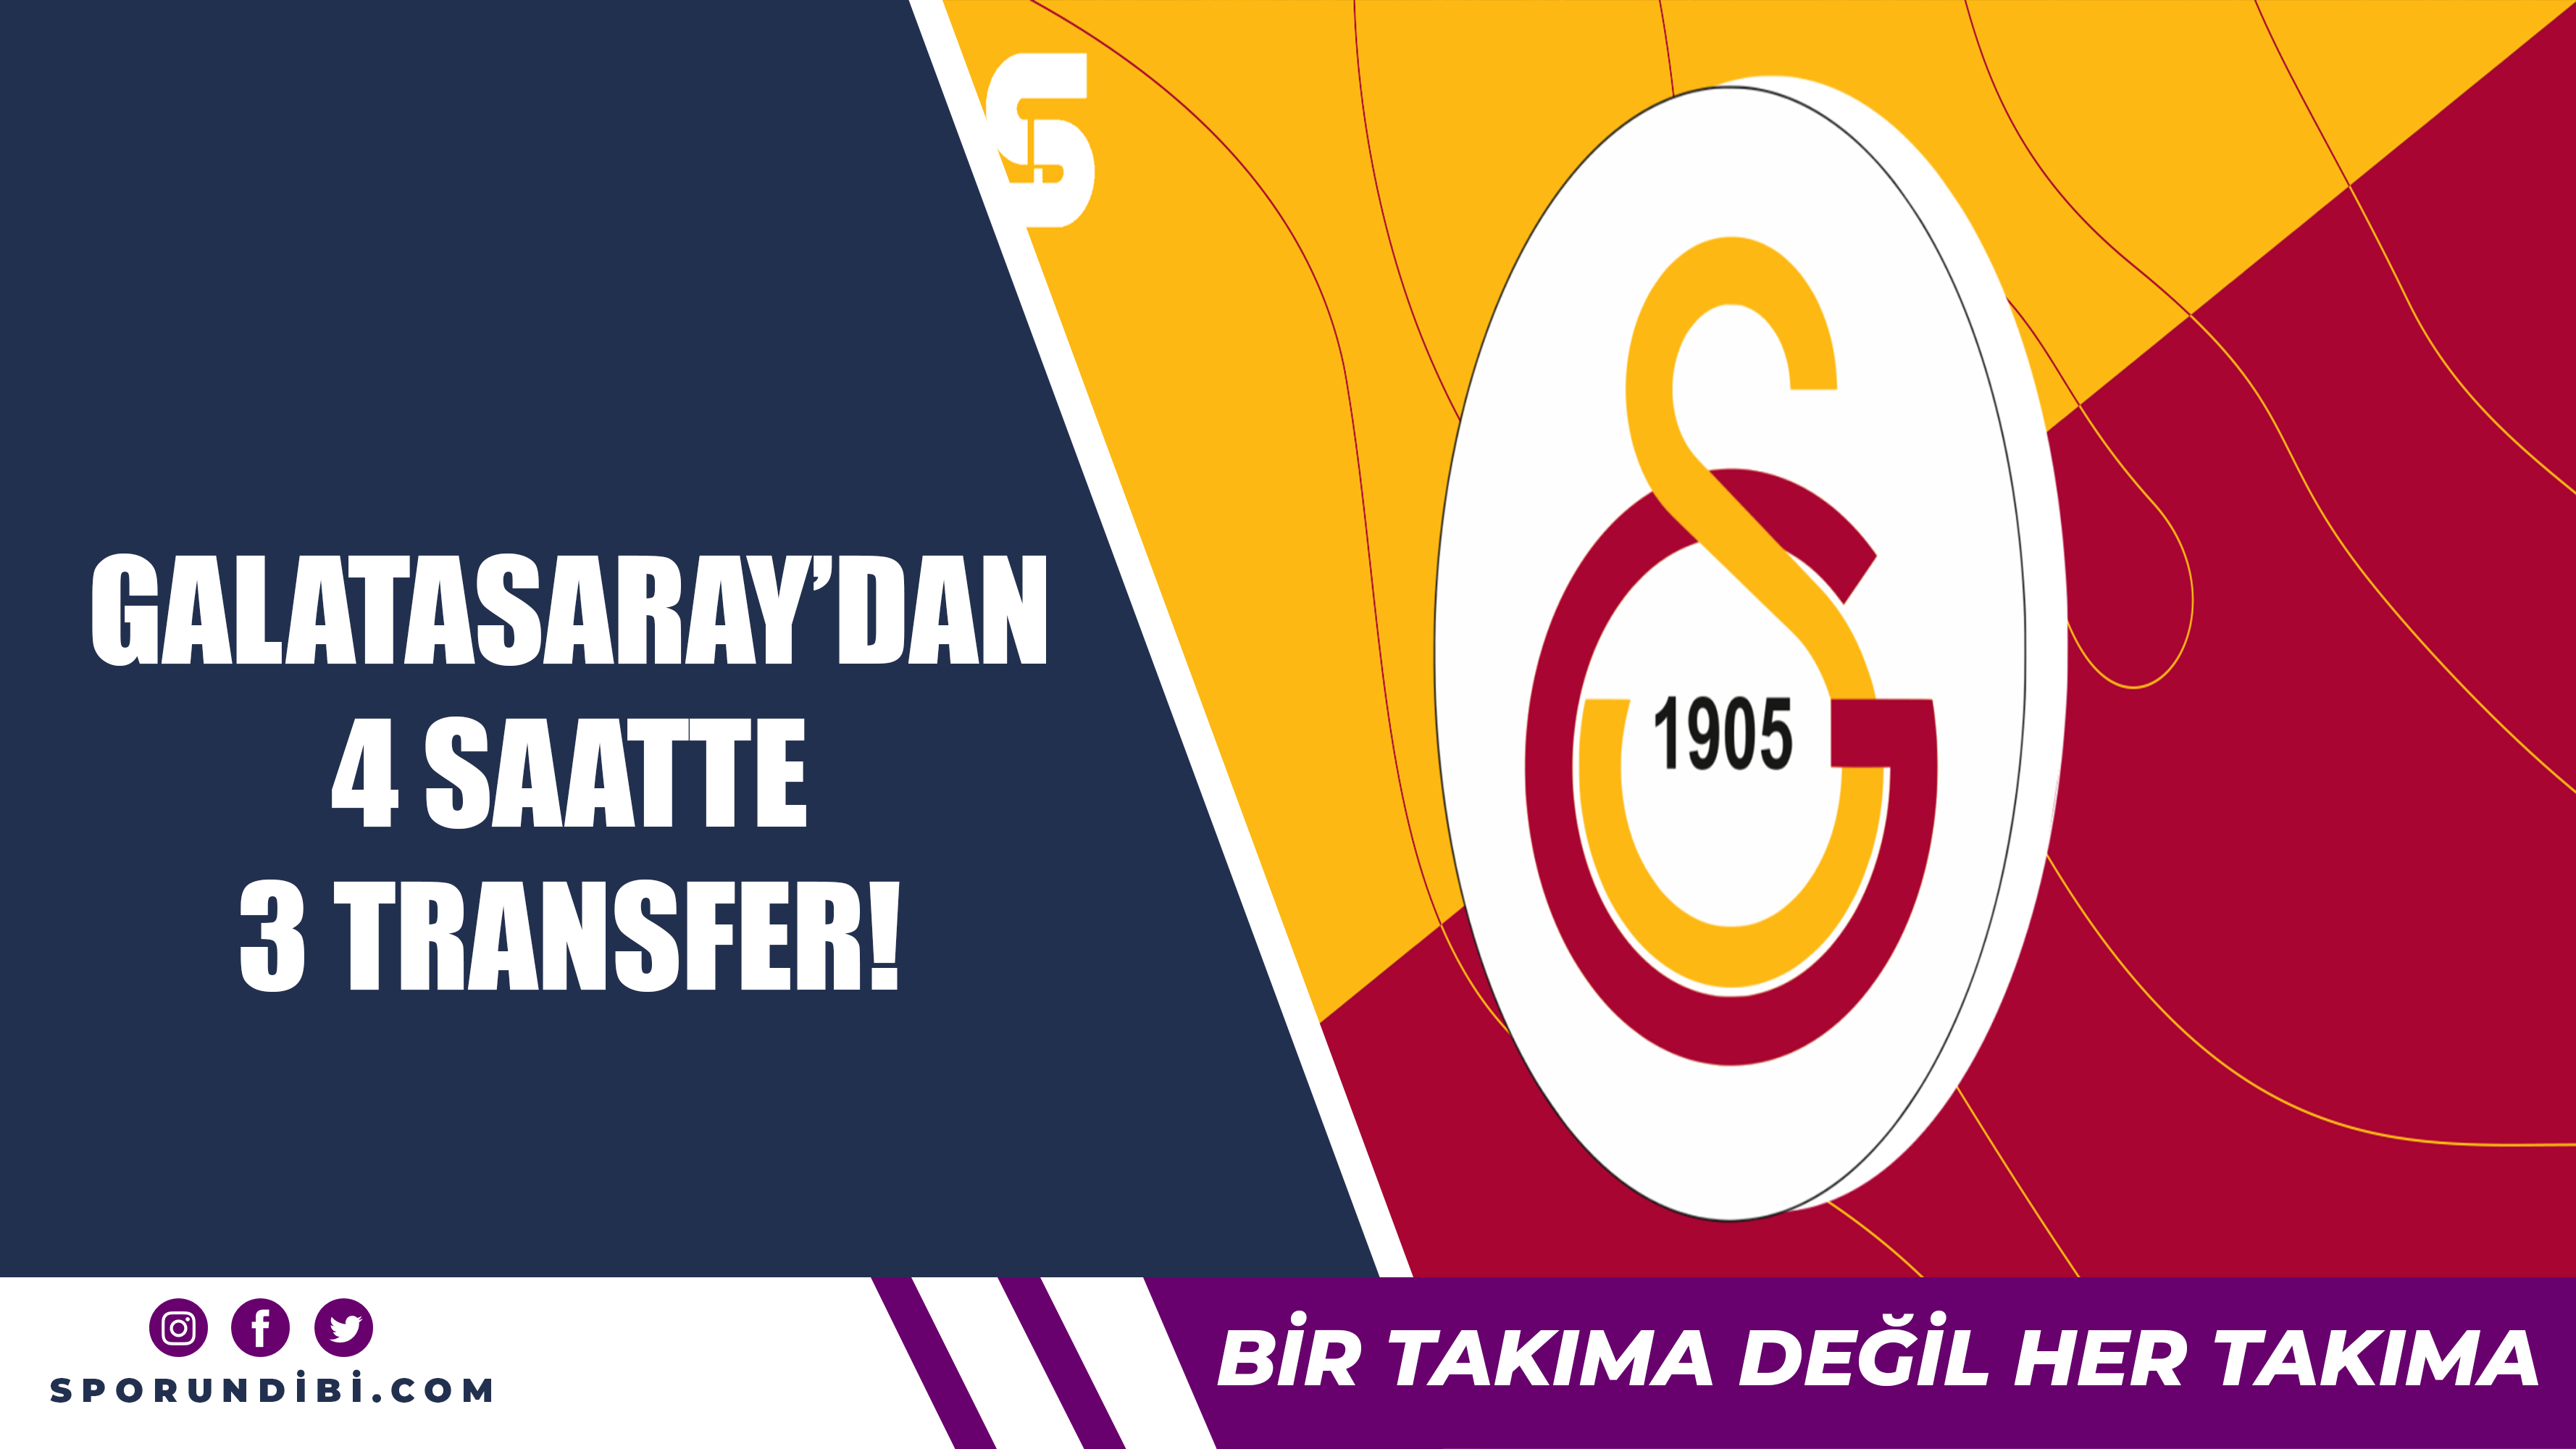 Galatasaray'dan 4 saatte 3 transfer!